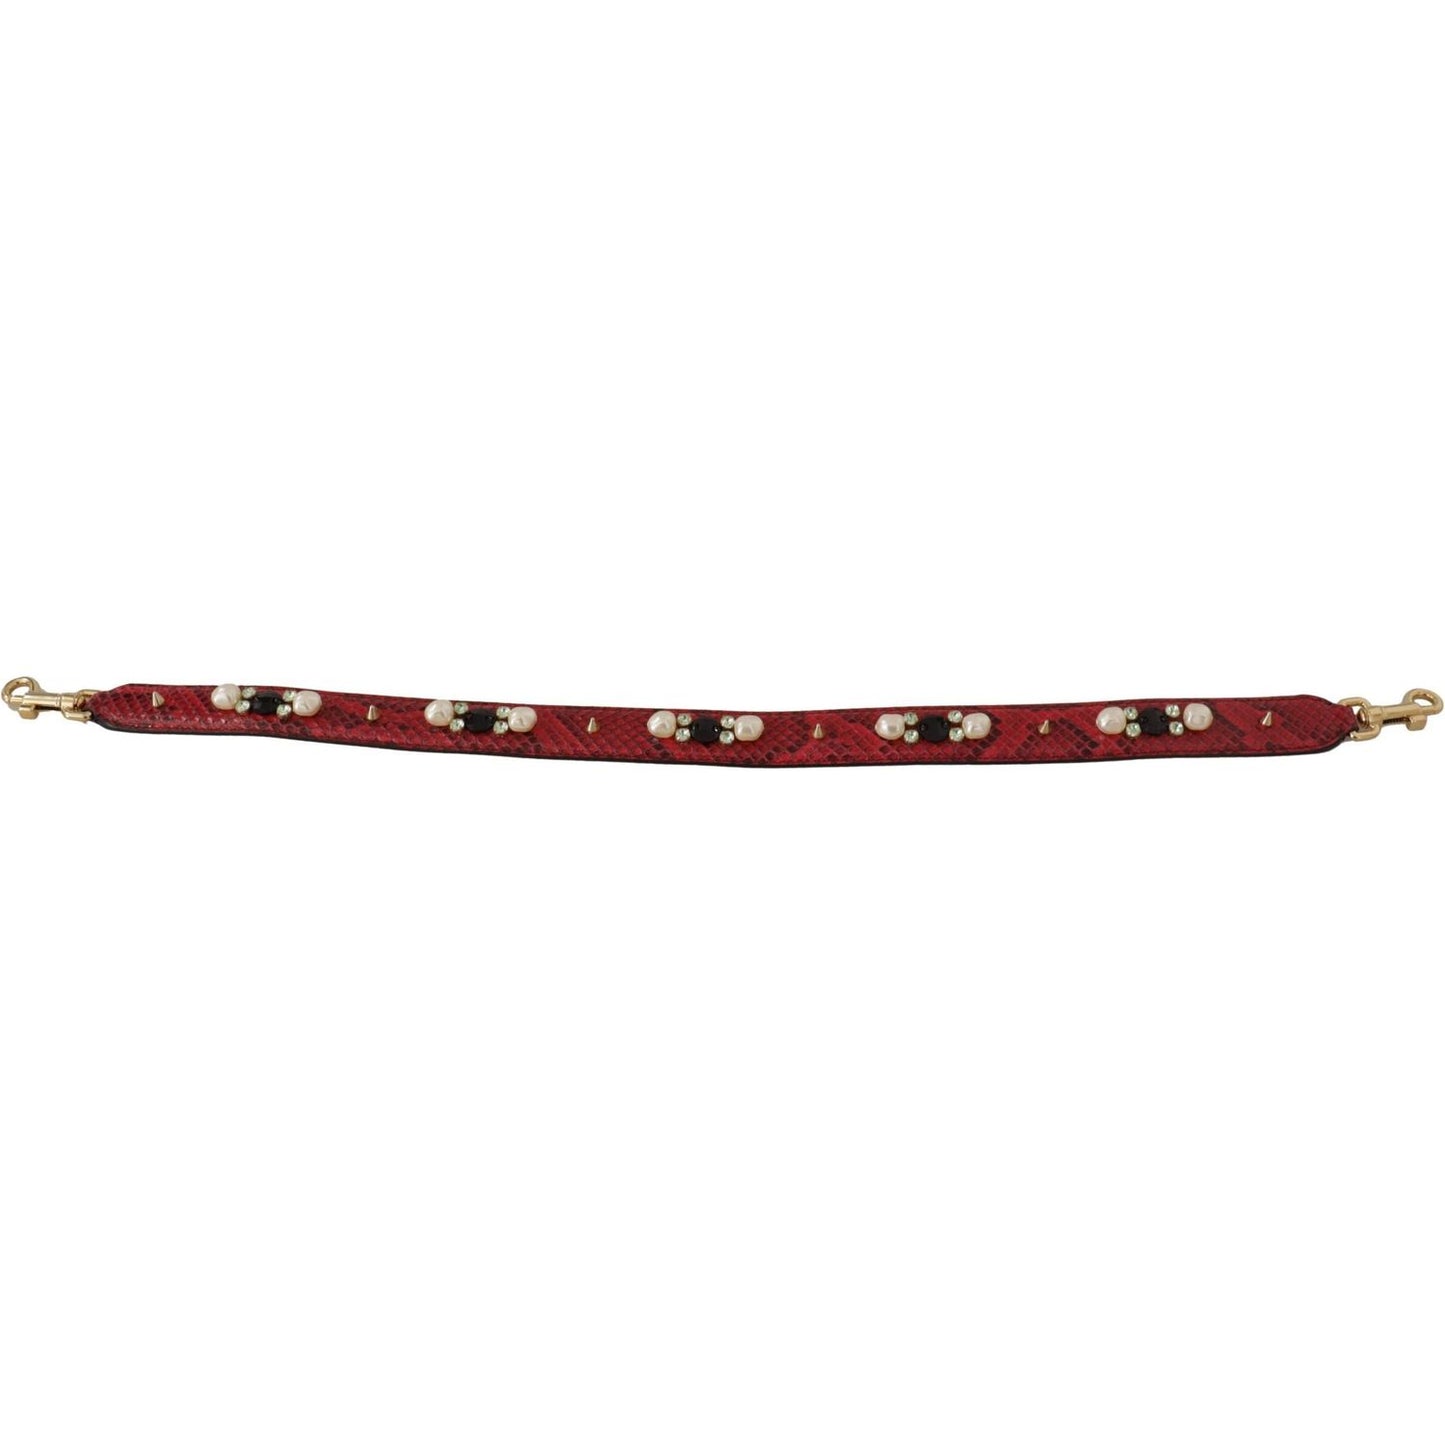 Dolce & Gabbana Elegant Red Python Leather Shoulder Strap red-exotic-leather-crystals-bag-shoulder-strap IMG_9662-1-1-scaled-2864b36b-bf2.jpg